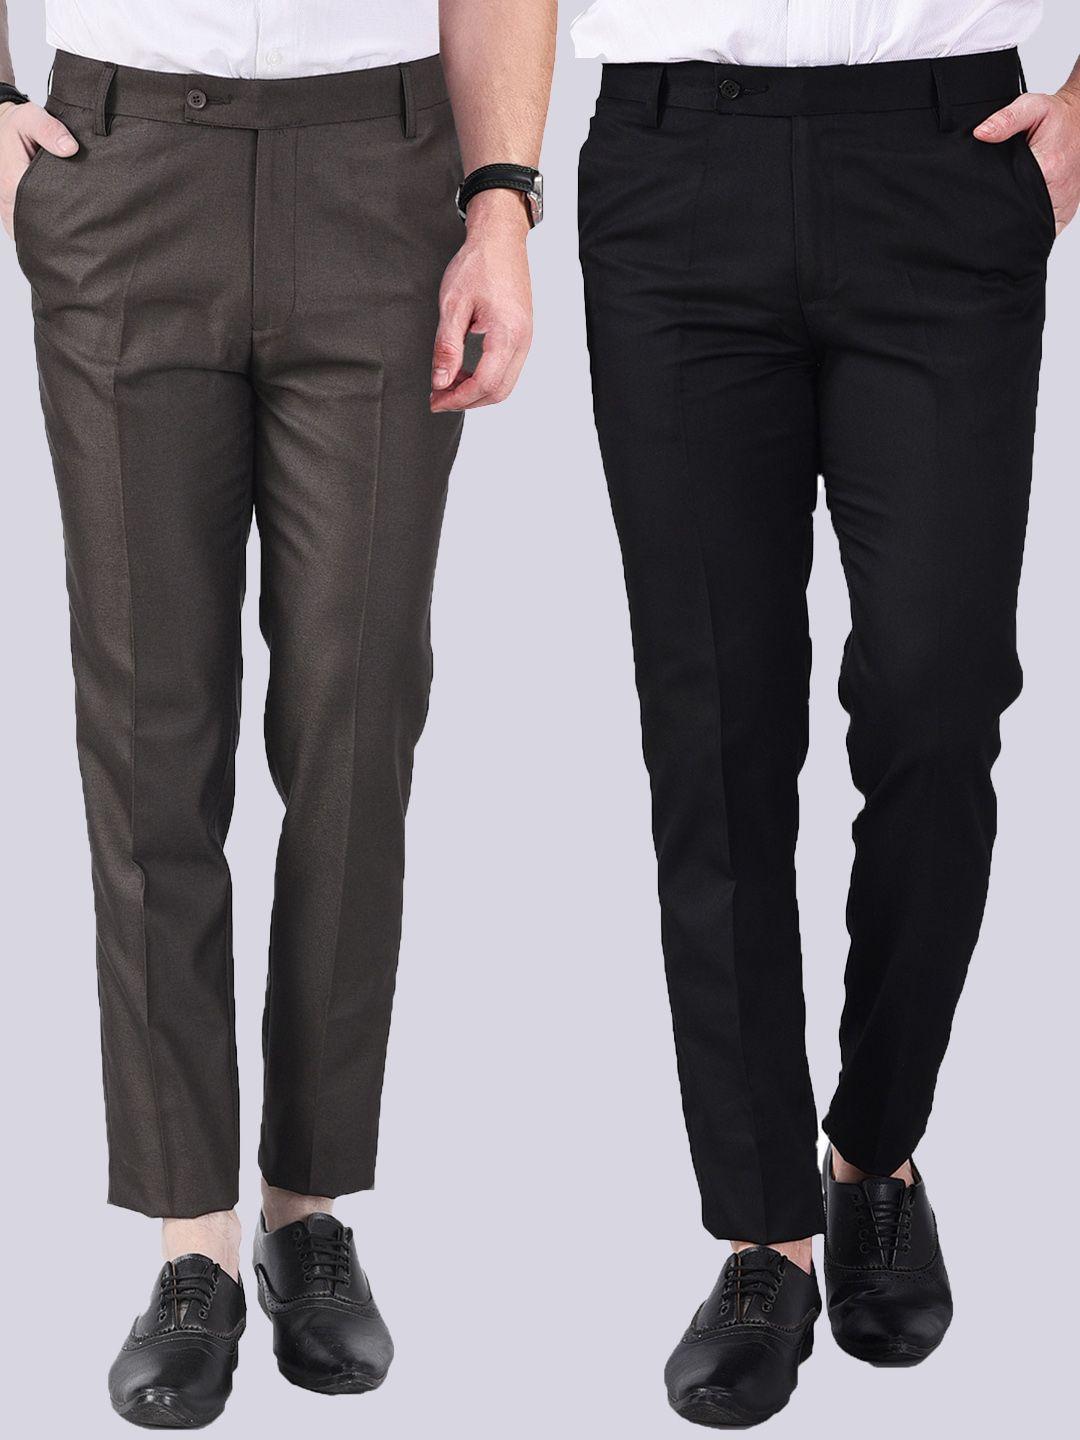 ad & av men coffee brown & black set of 2 formal trousers